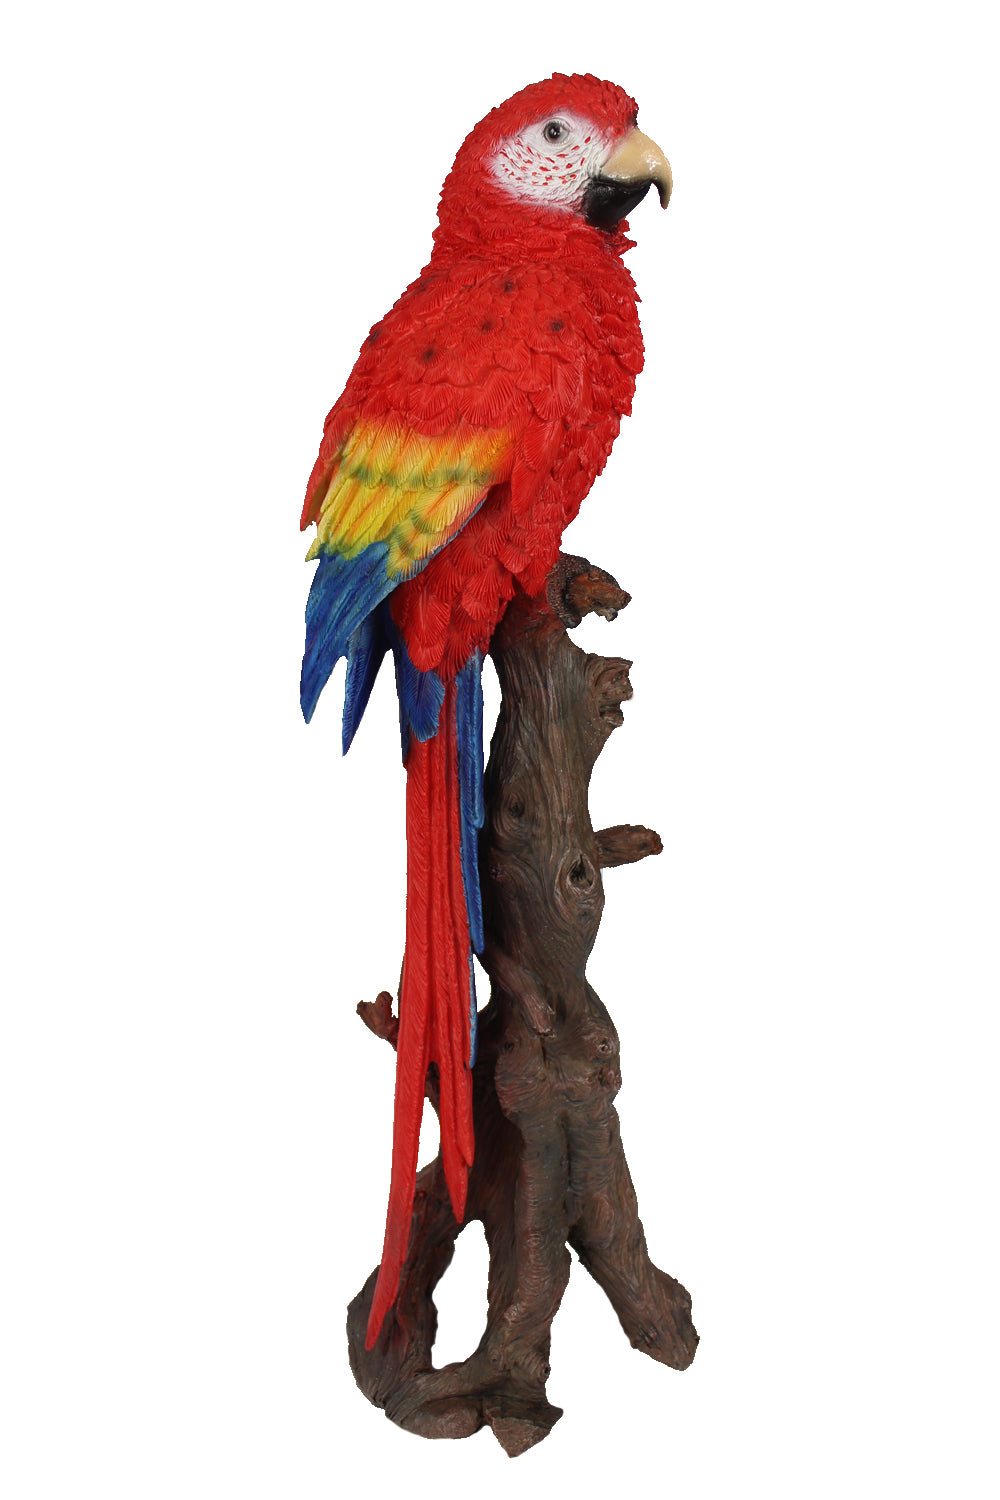 Gartenfigur lebensecht arnusa – Ara 66cm Tierfigur Papagei